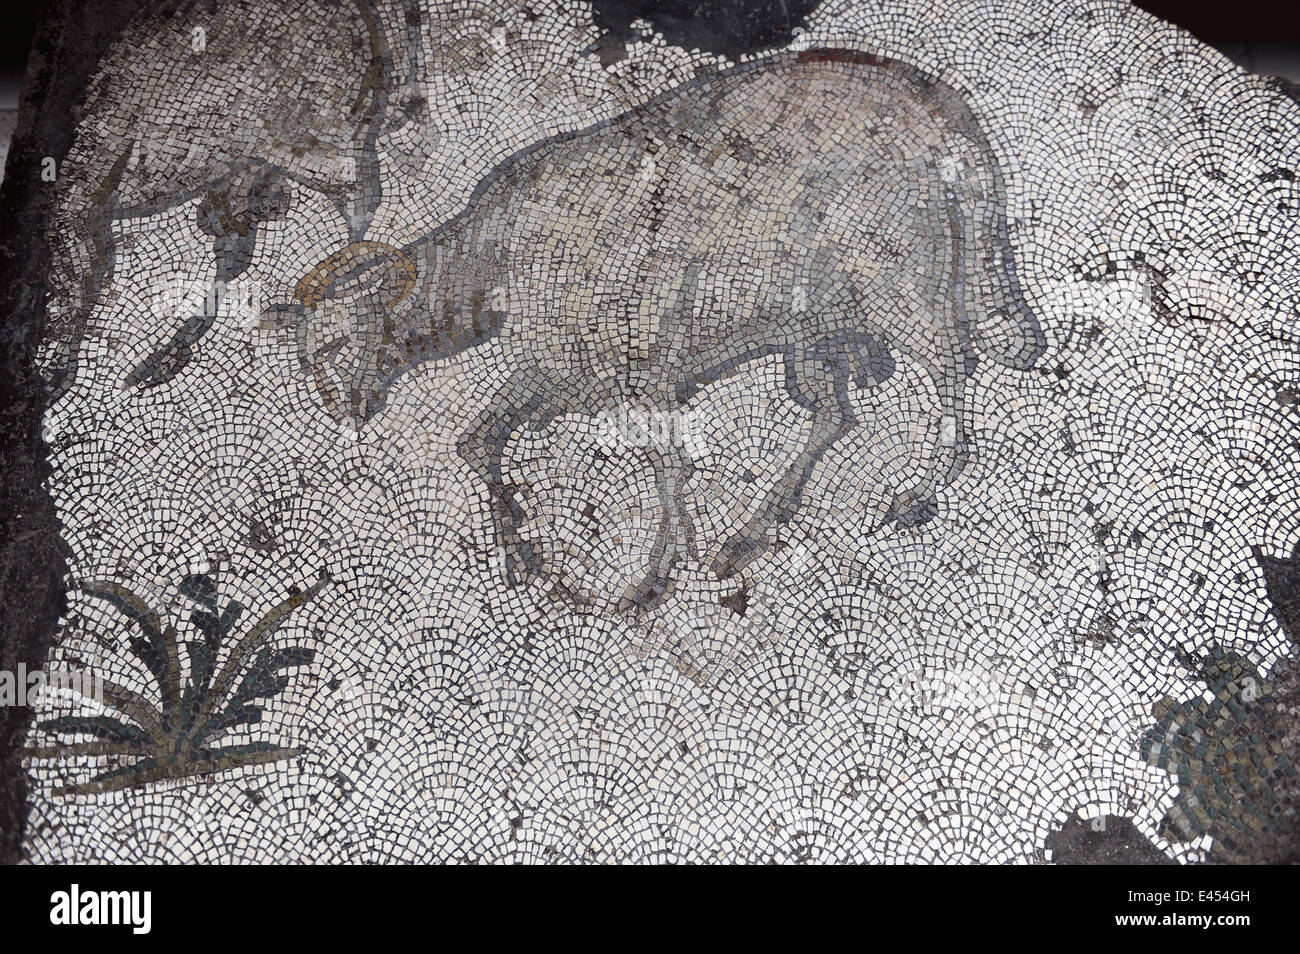 Großer Palast Mosaik-Museum. 4.-6. Jahrhunderte. Detail eines Mosaiks Darstellung ein Schaf. Süd-West-Halle. Istanbul. Turkei. Stockfoto